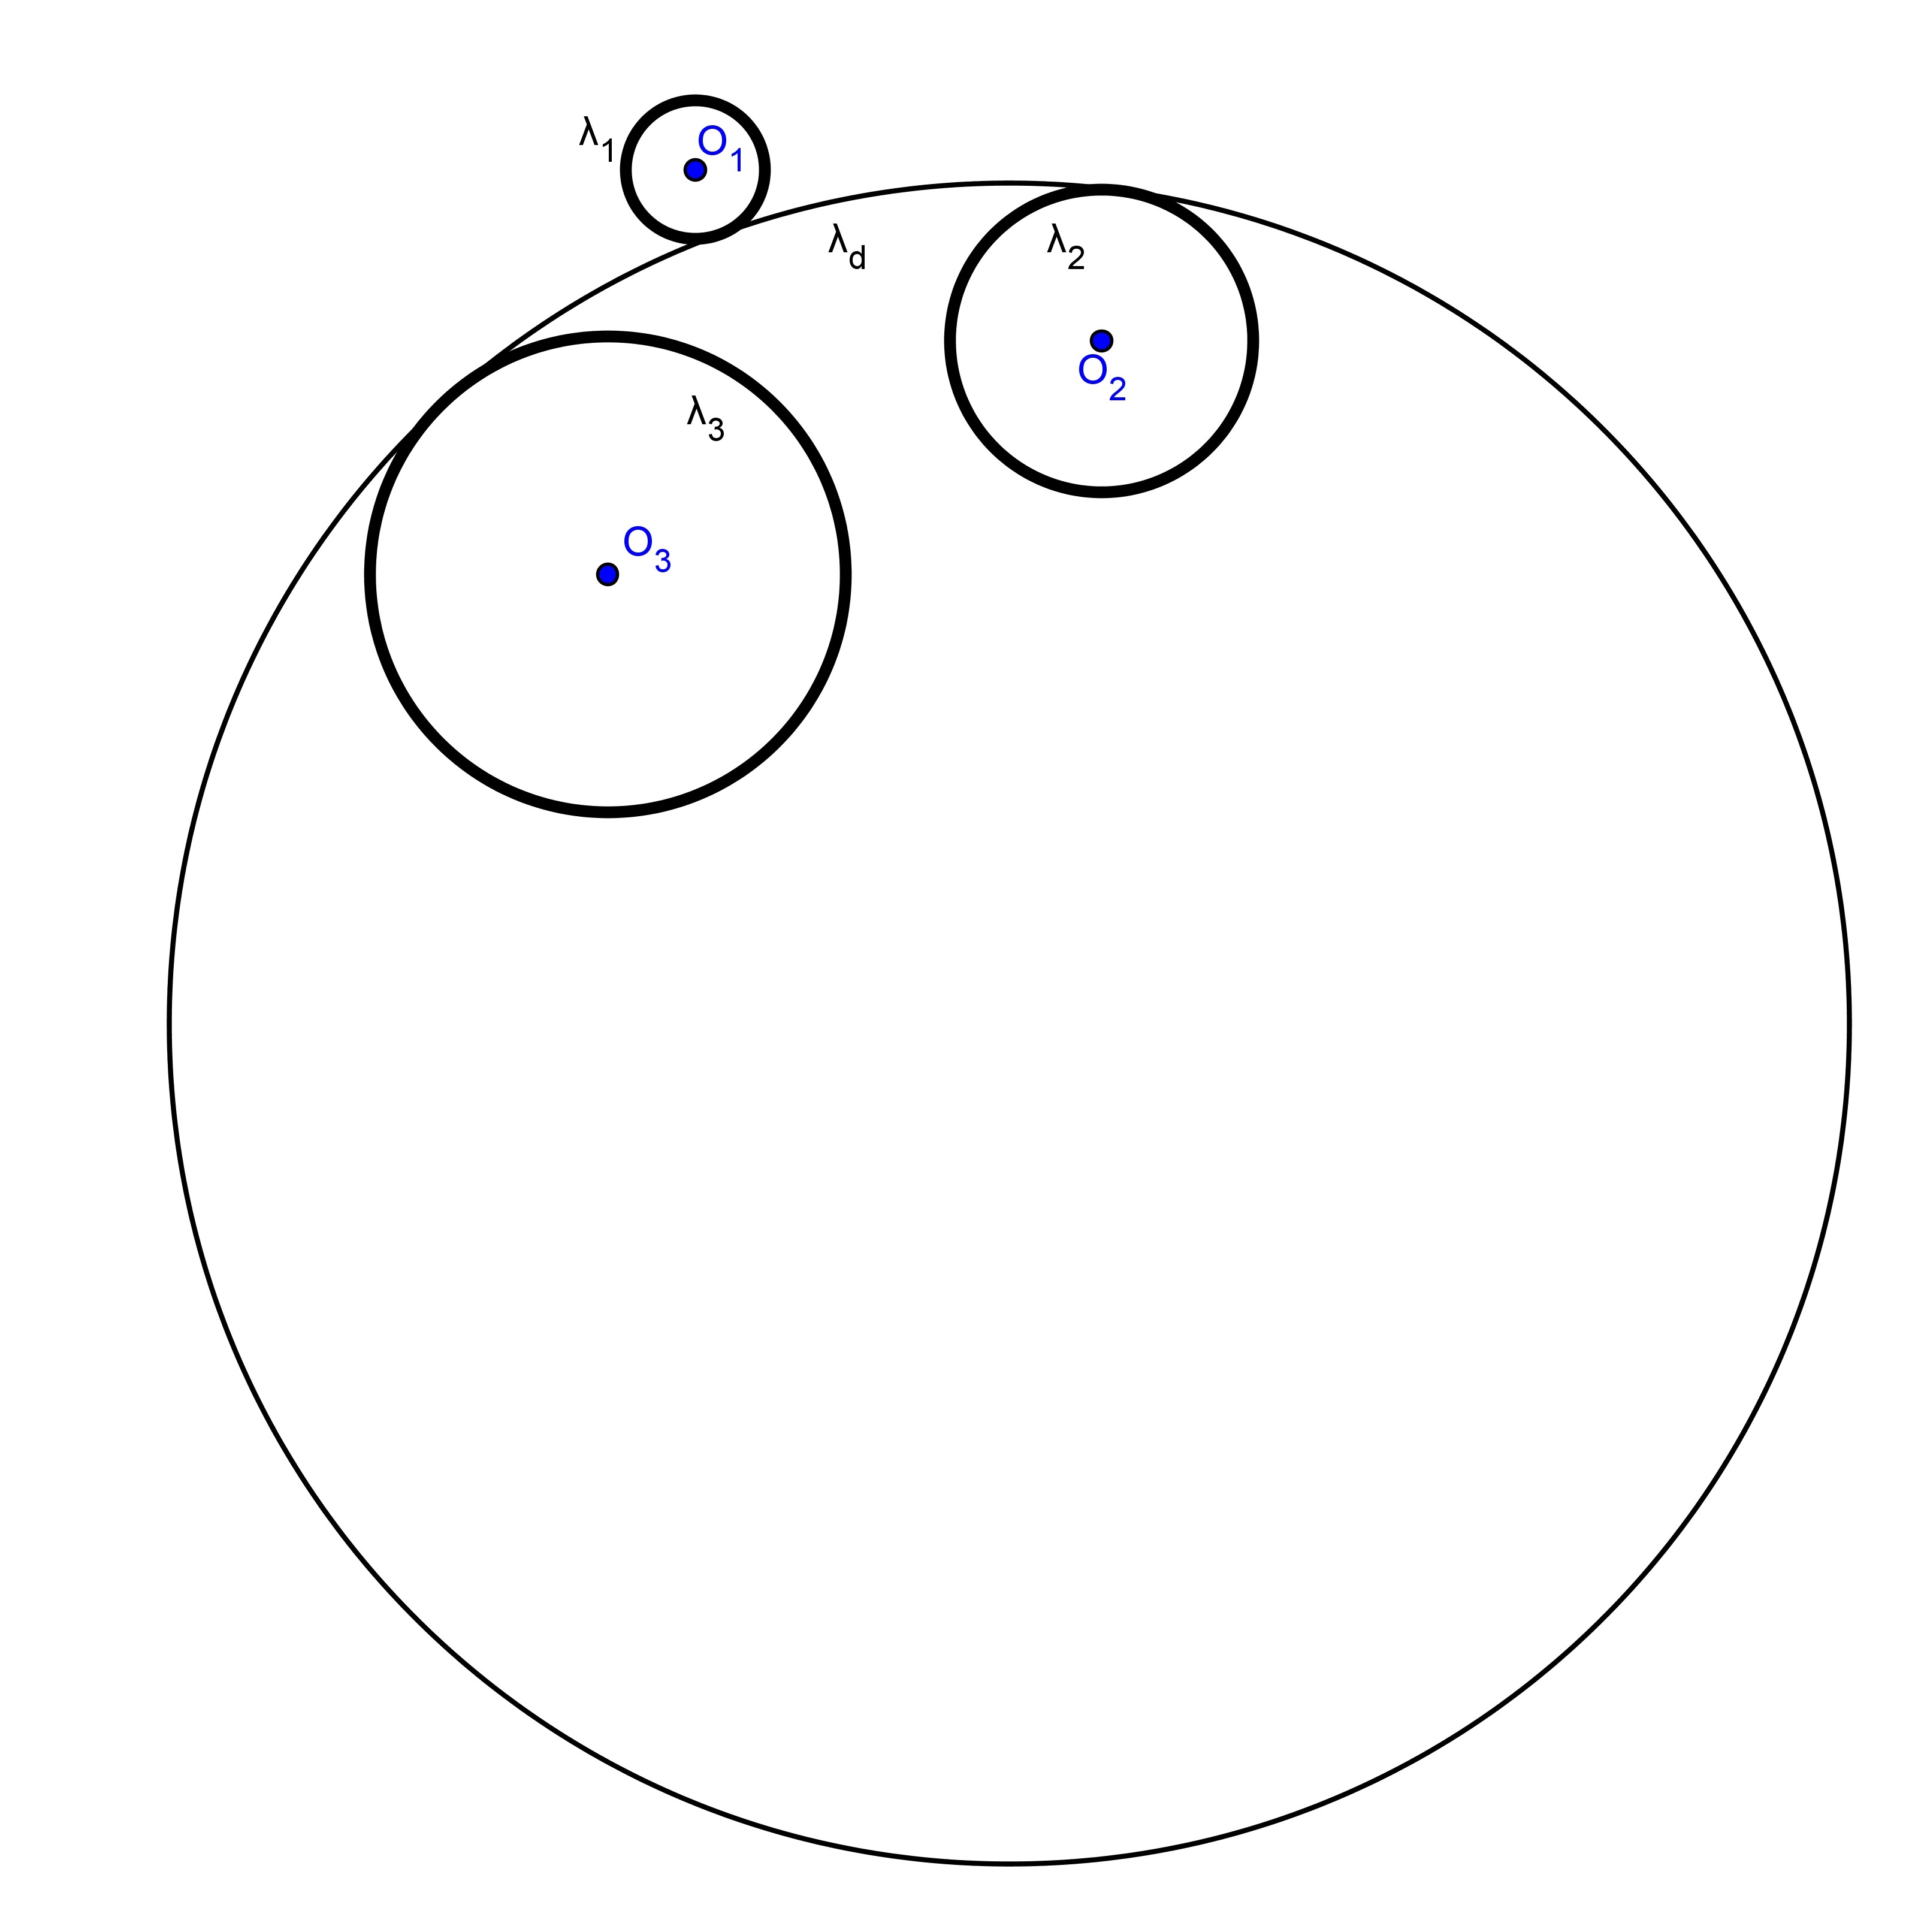 Seja O e e R e o centro e o raio respectivamente de Λ e, então a circunferência λ e de centro em O e e raio S e